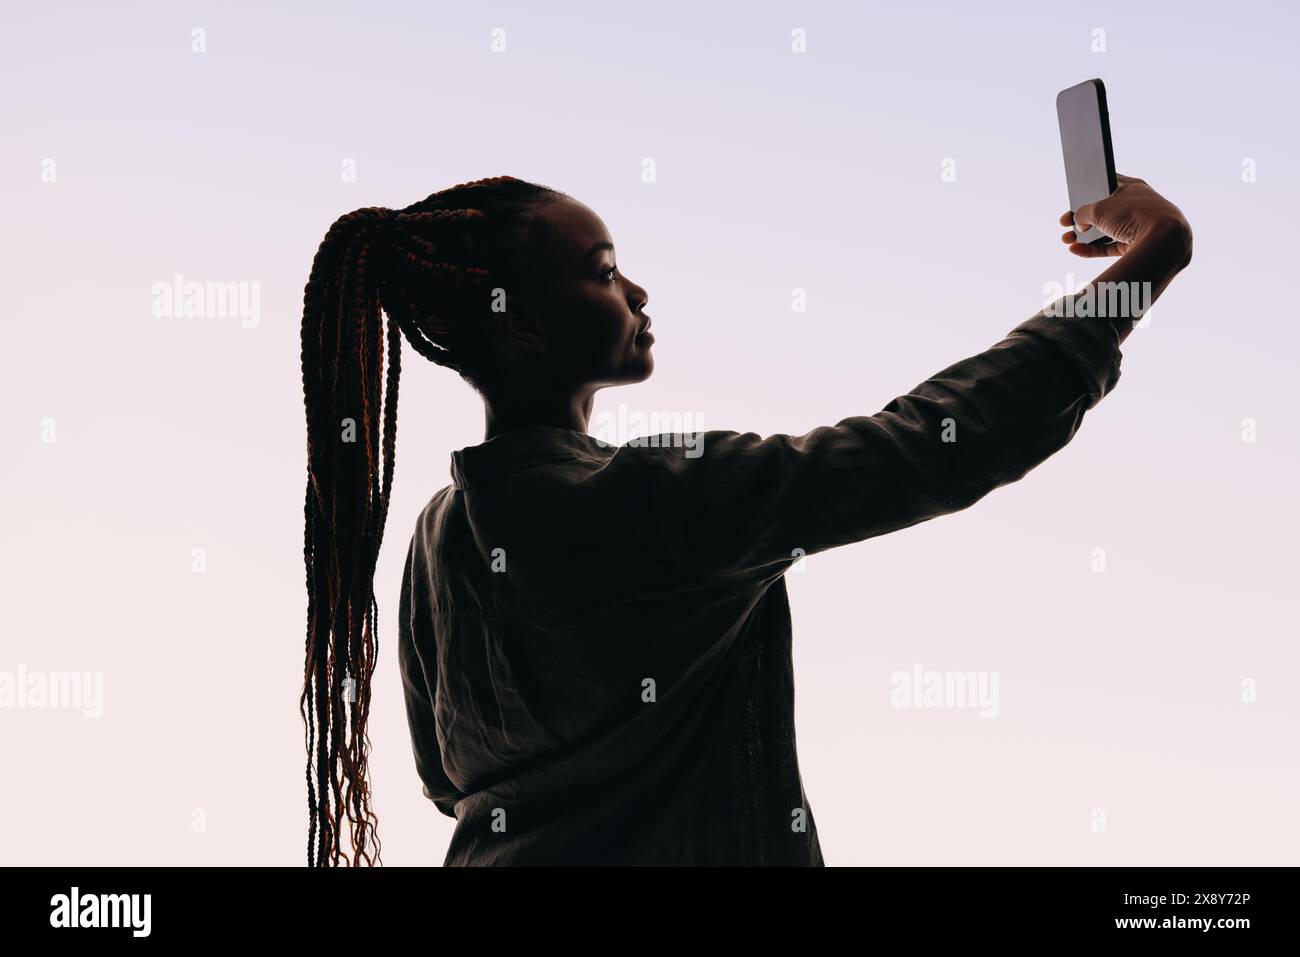 Eine selbstbewusste Frau aus der Generation Z macht ein Selfie mit einem Smartphone. Sie steht in einem Studio vor weißem Hintergrund und trägt einen Pferdeschwanz mit Brai Stockfoto